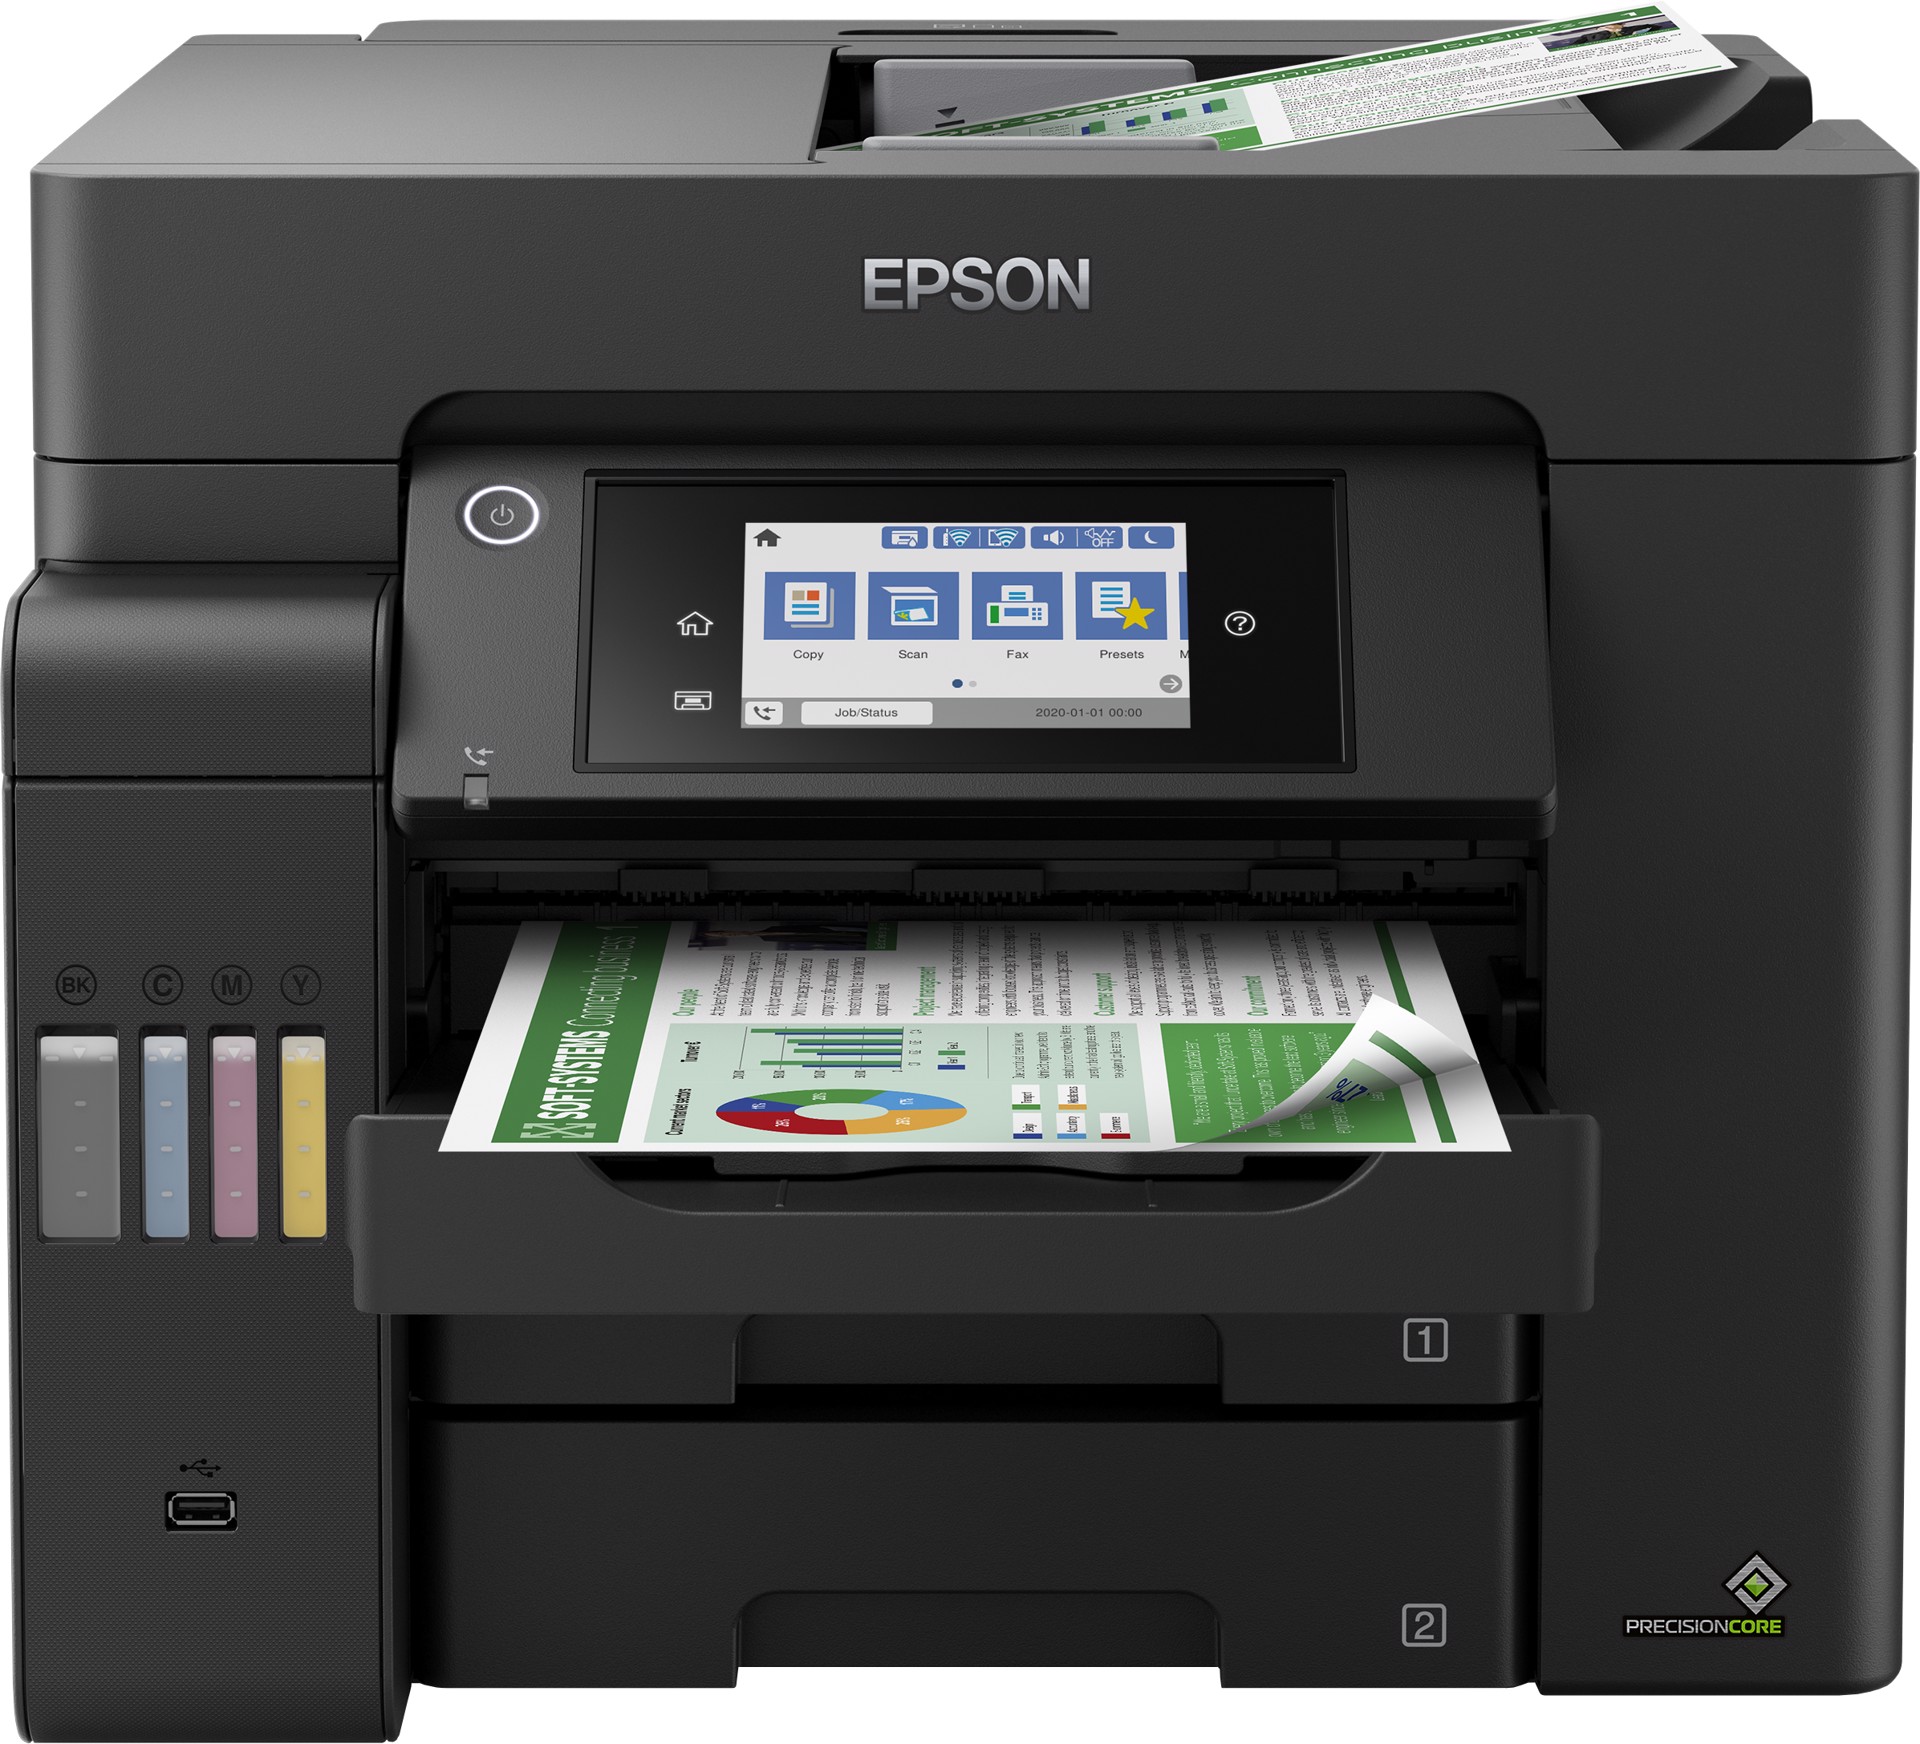 Stampante Multifunzione Epson EcoTank ET-4800 4 in 1 Scansione Copia Stampa  Fax Wifi con flaconi di inchiostro Originali Inclu